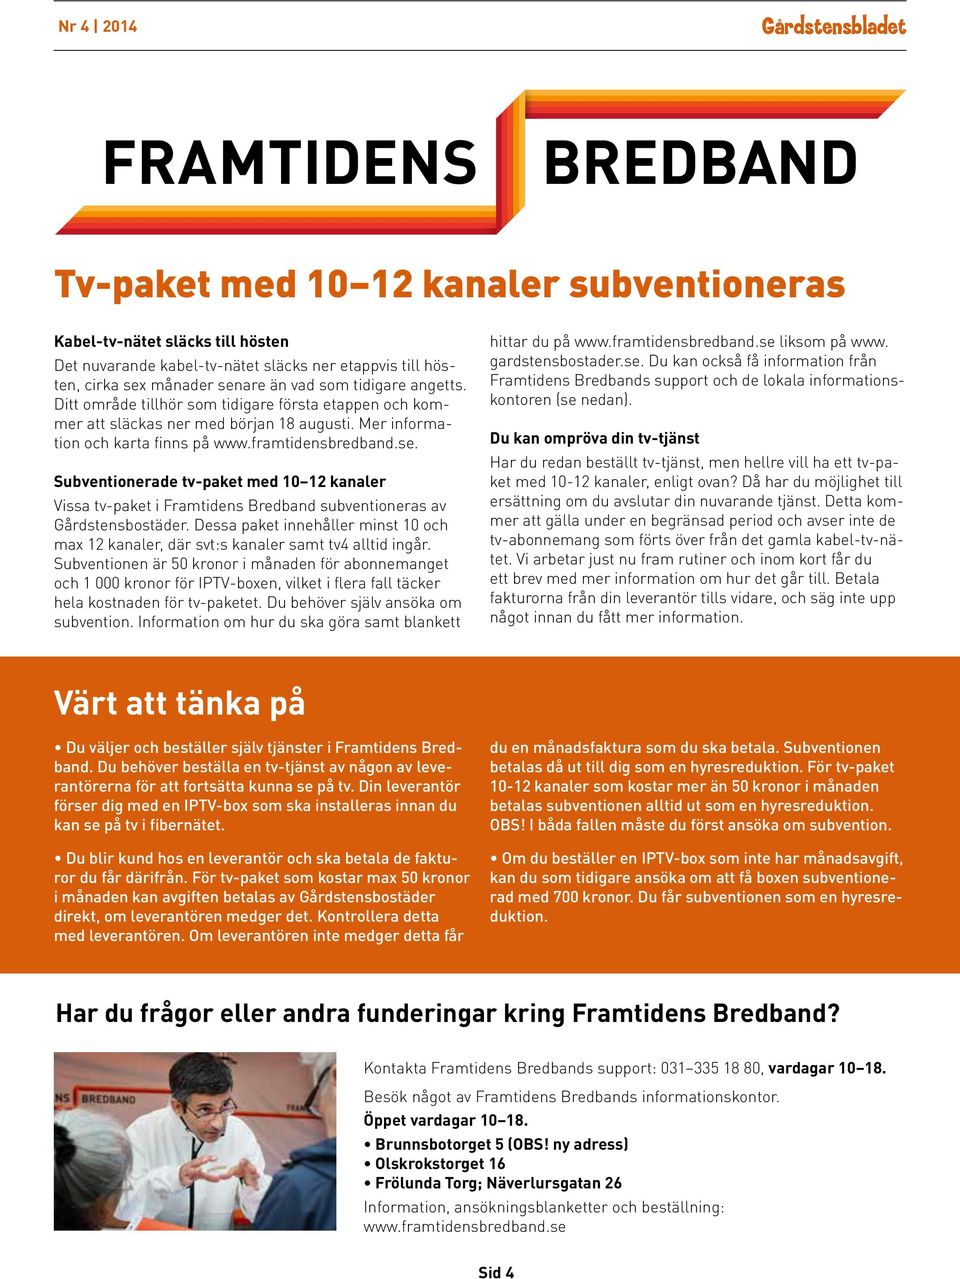 Subventionerade tv-paket med 10 12 kanaler Vissa tv-paket i Framtidens Bredband subventioneras av Gårdstensbostäder.